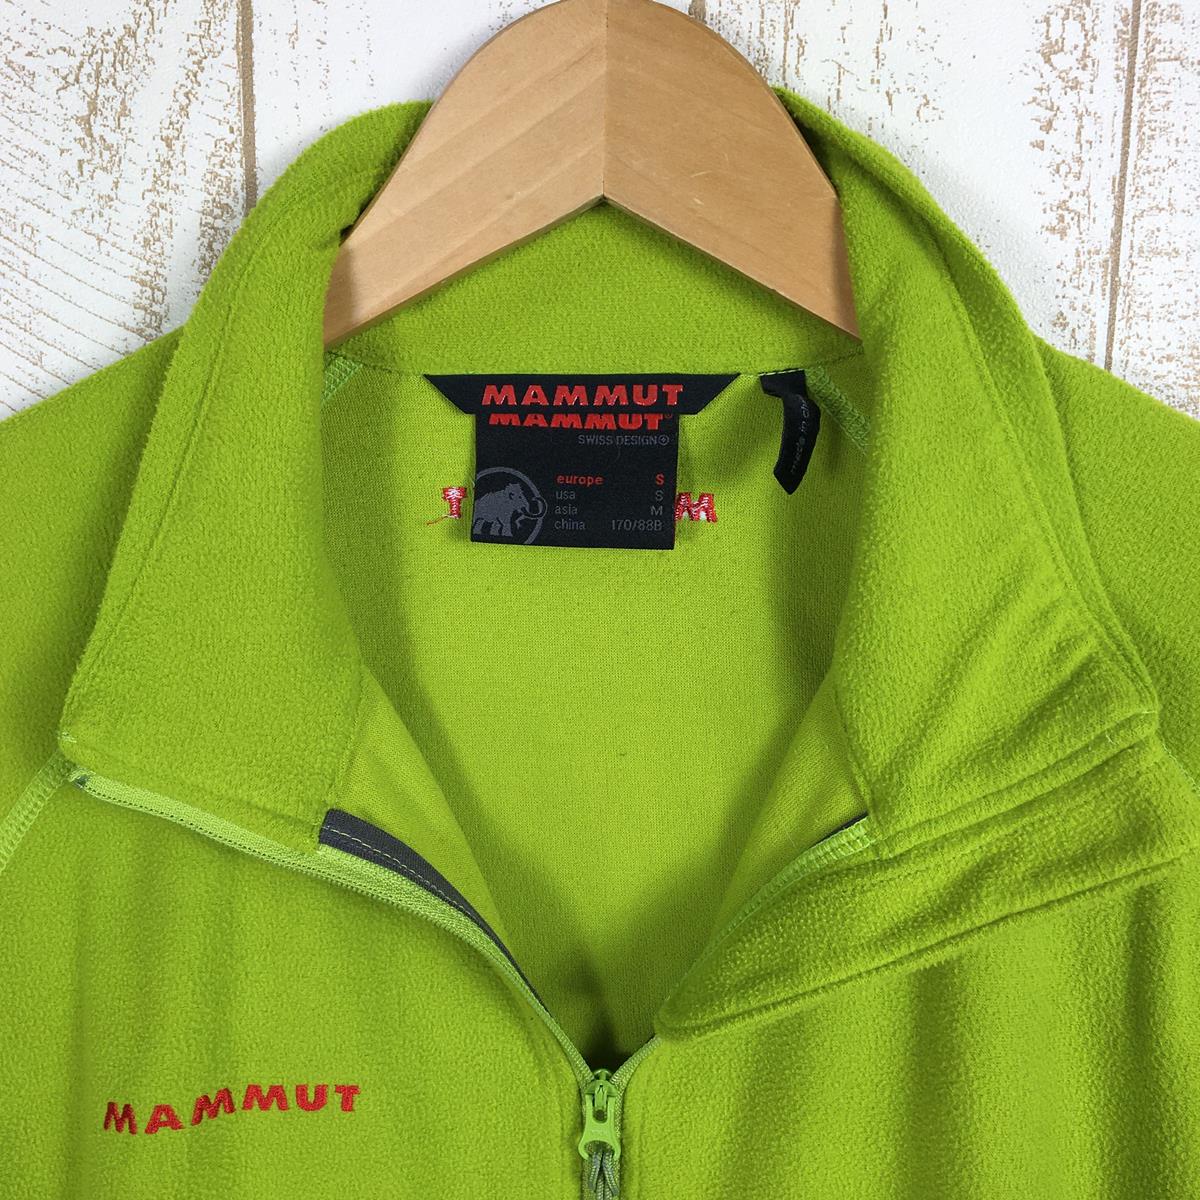 【MEN's S】 マムート エクスカージョン ライト フリース ジャケット Excursion Light Fleece Jacket サーモライト MAMMUT 1010-14471 グリーン系